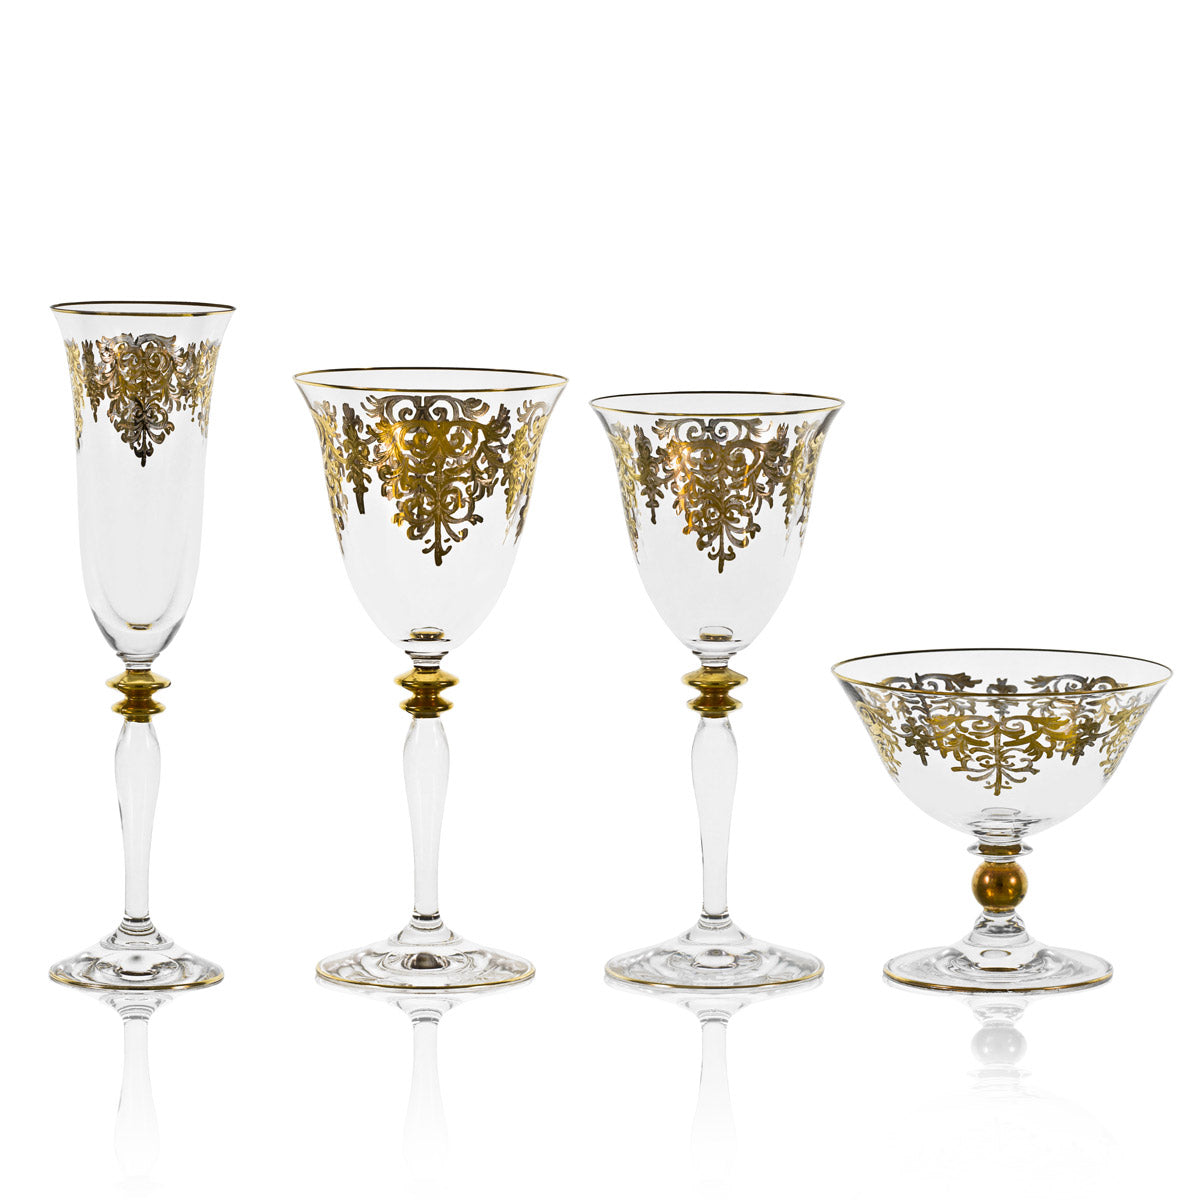 Servizio bicchieri con decorazione prestigiosa in oro - Giulia